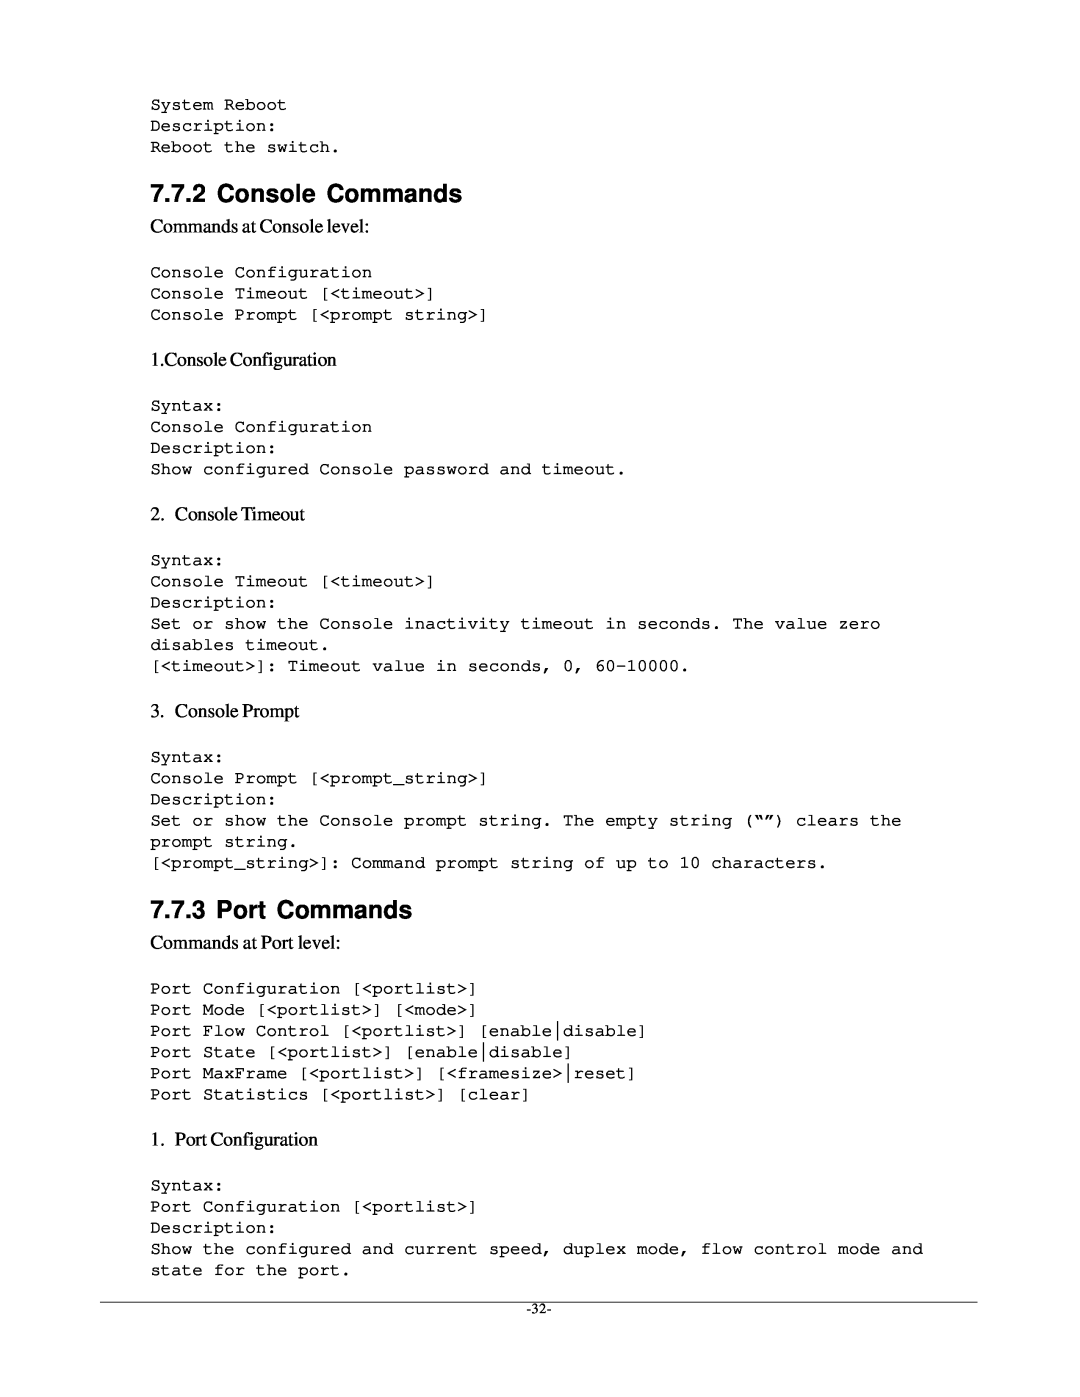 KTI Networks kgs-1601 Console Commands, Port Commands, Commands at Console level, Console Configuration, Console Timeout 